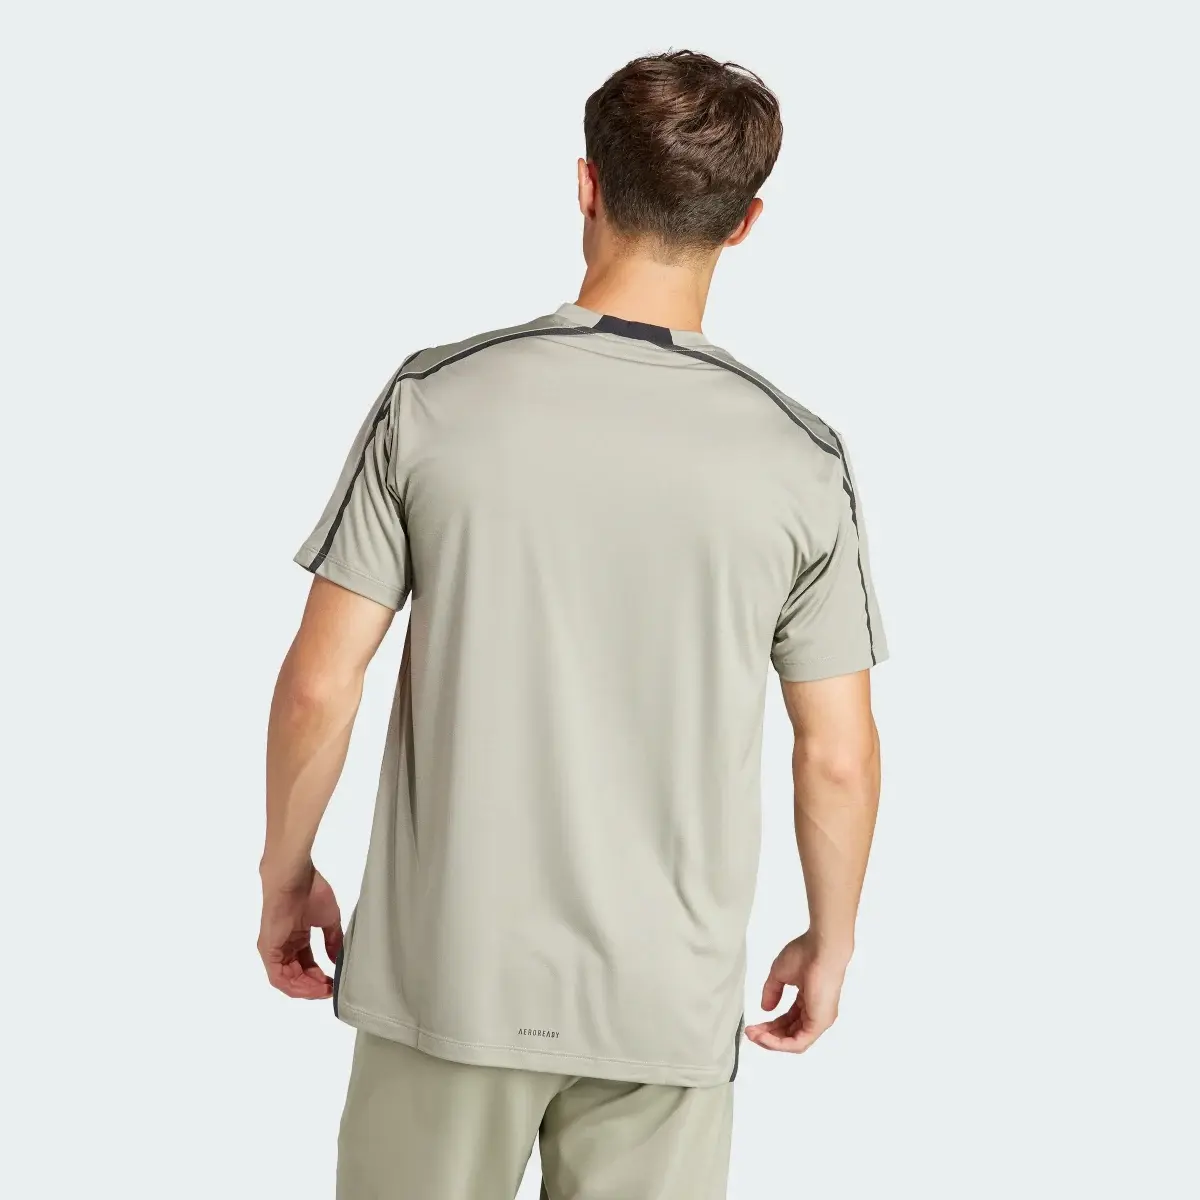 Adidas Camiseta Designed for Training Adistrong Workout. 3